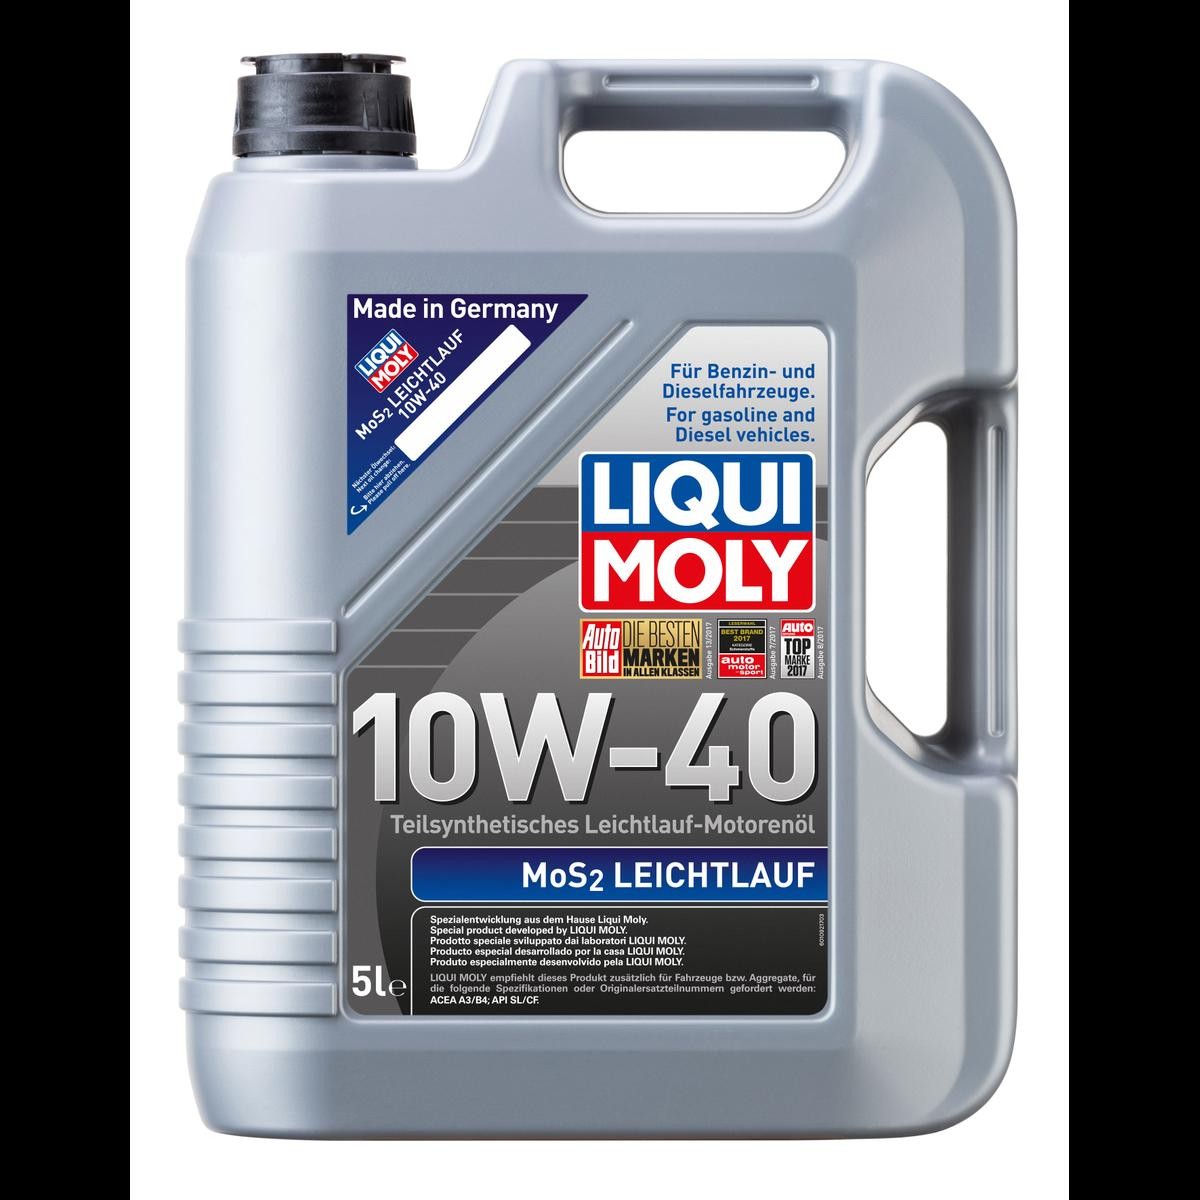 Liqui Moly 3706 5W-30 Top Tec 4200 Longlife III Motoröl 1l - Motorenöle  Gasbetriebene Fahrzeuge - Liqui Moly - Öl Marken - Öle 